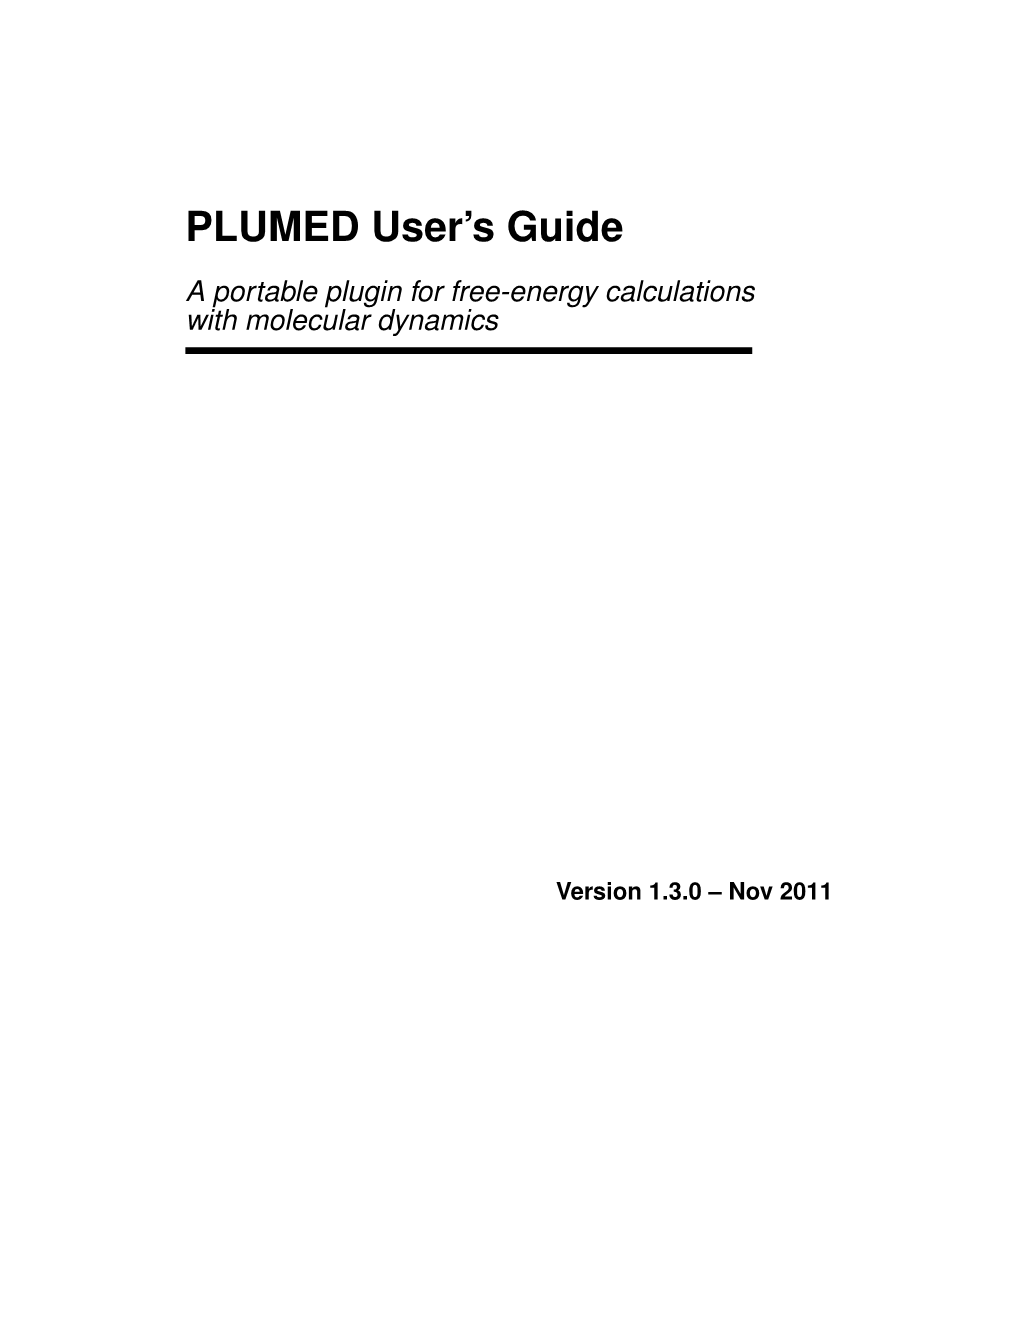 PLUMED User's Guide